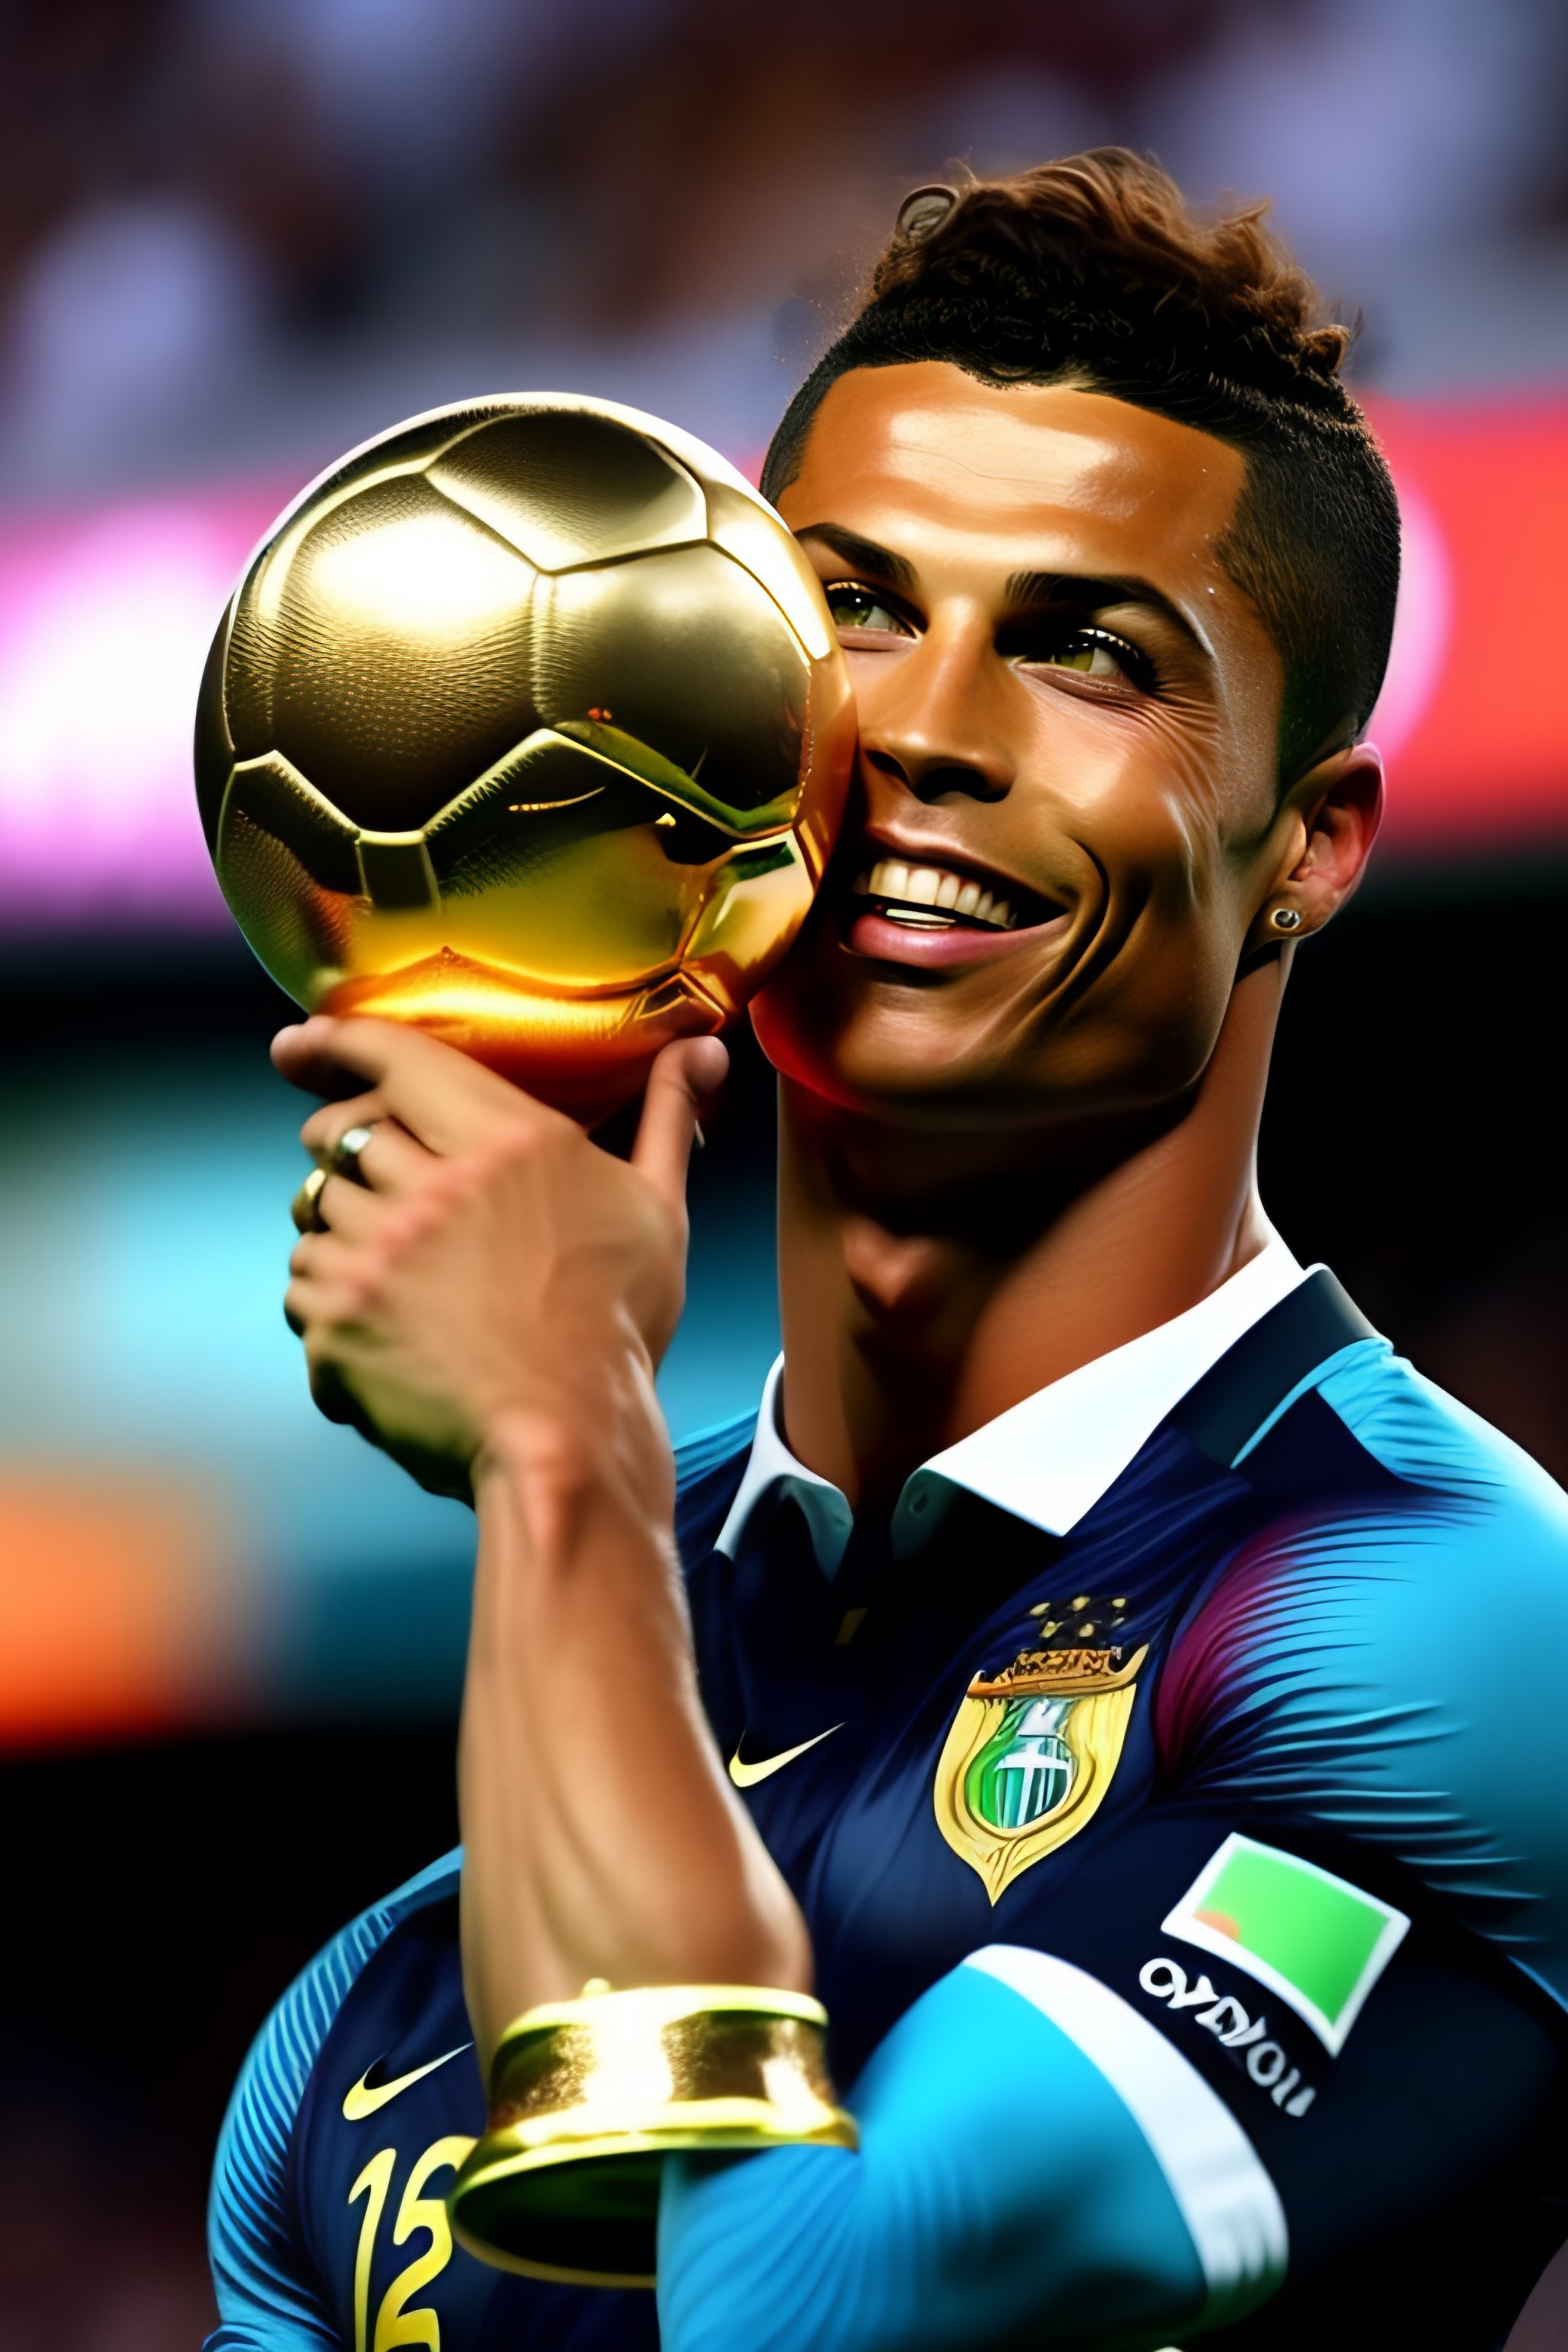 Dành cho những ai đang ao ước chứng kiến chiếc cúp vàng World Cup trên tay Ronaldo, hãy chiêm ngưỡng bức tranh hình của Lexica. Đây chính là một bức hình đầy bất ngờ và tuyên bố của những khát vọng thực sự, tạo nên một năng lượng lạ kỳ cho màn hình của bạn.